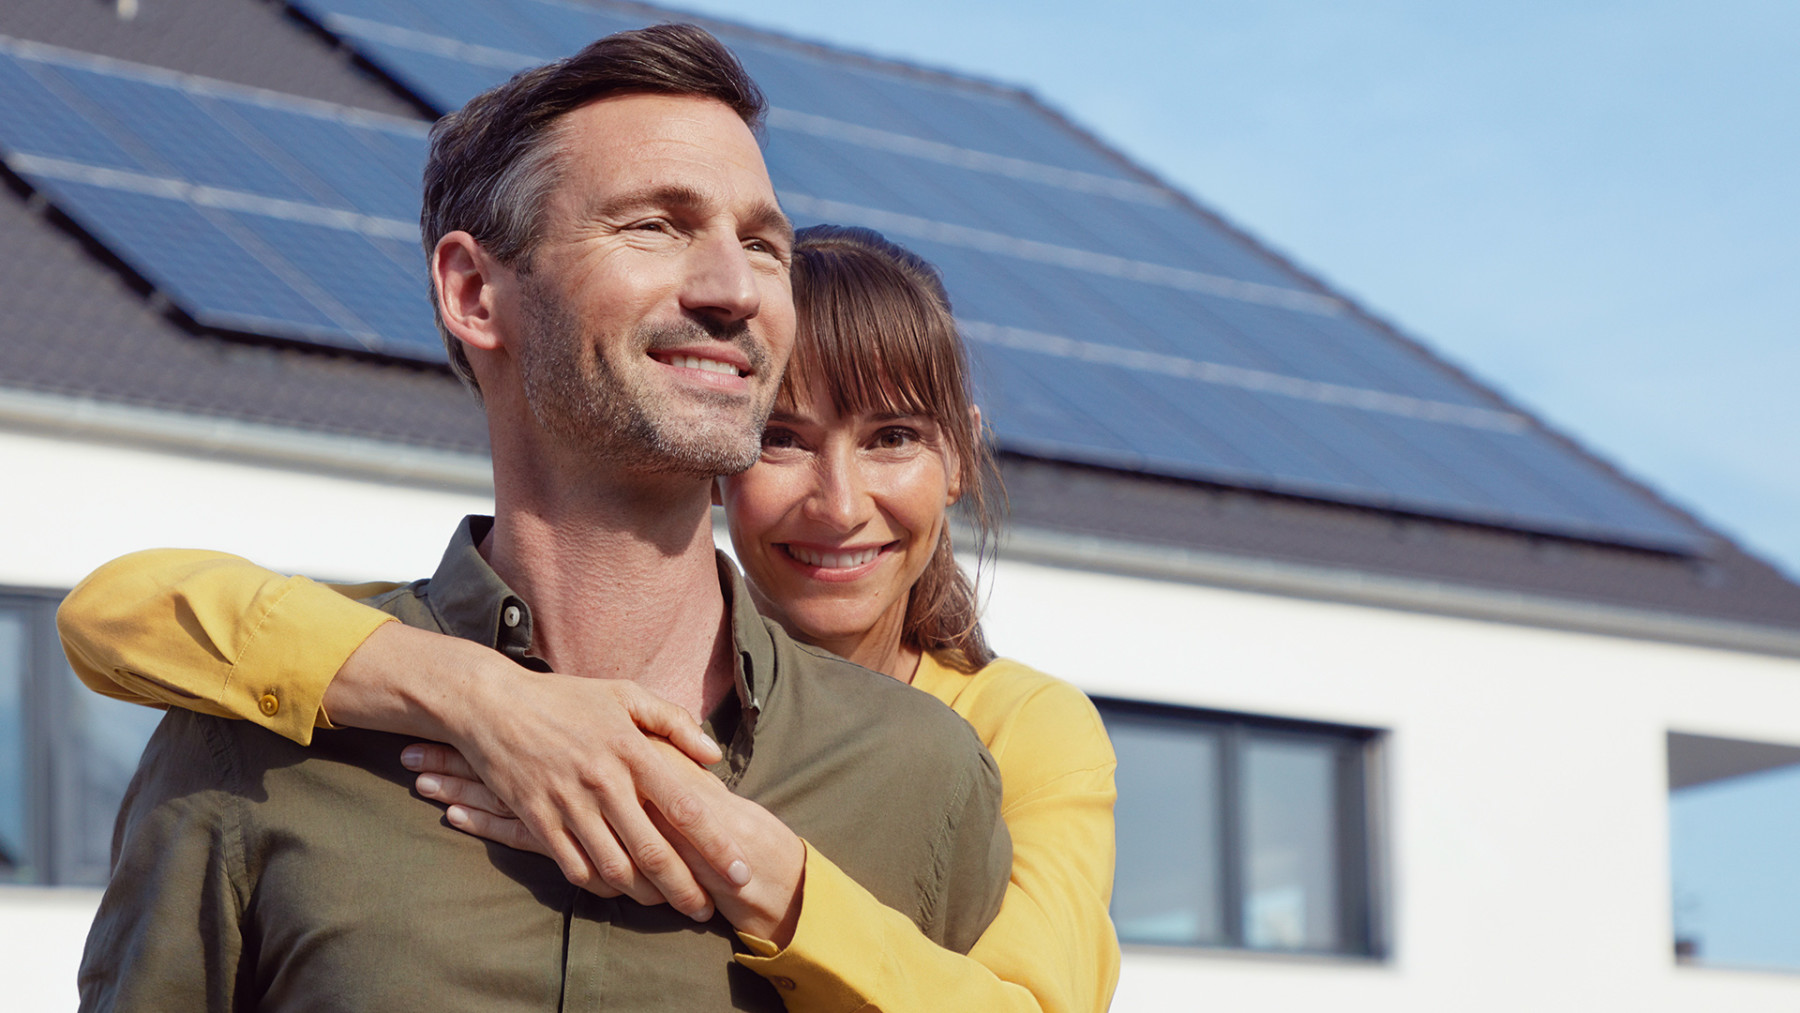 EnBW Kunden stehen stolz vor ihrer EnBW solar+ Solaranlage.